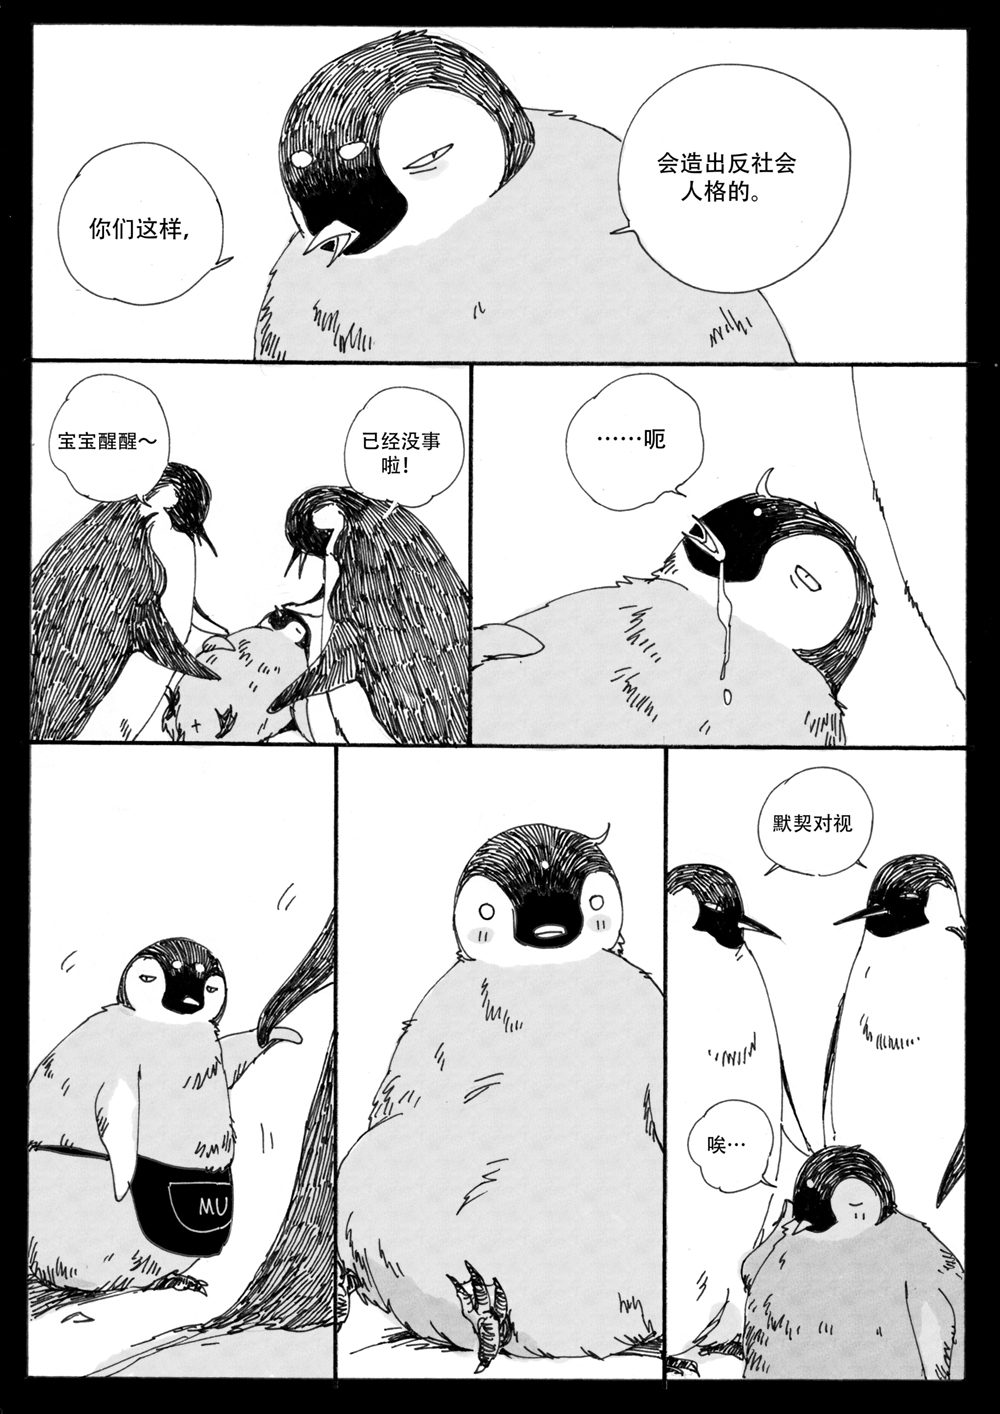 penguin_swim6_1000